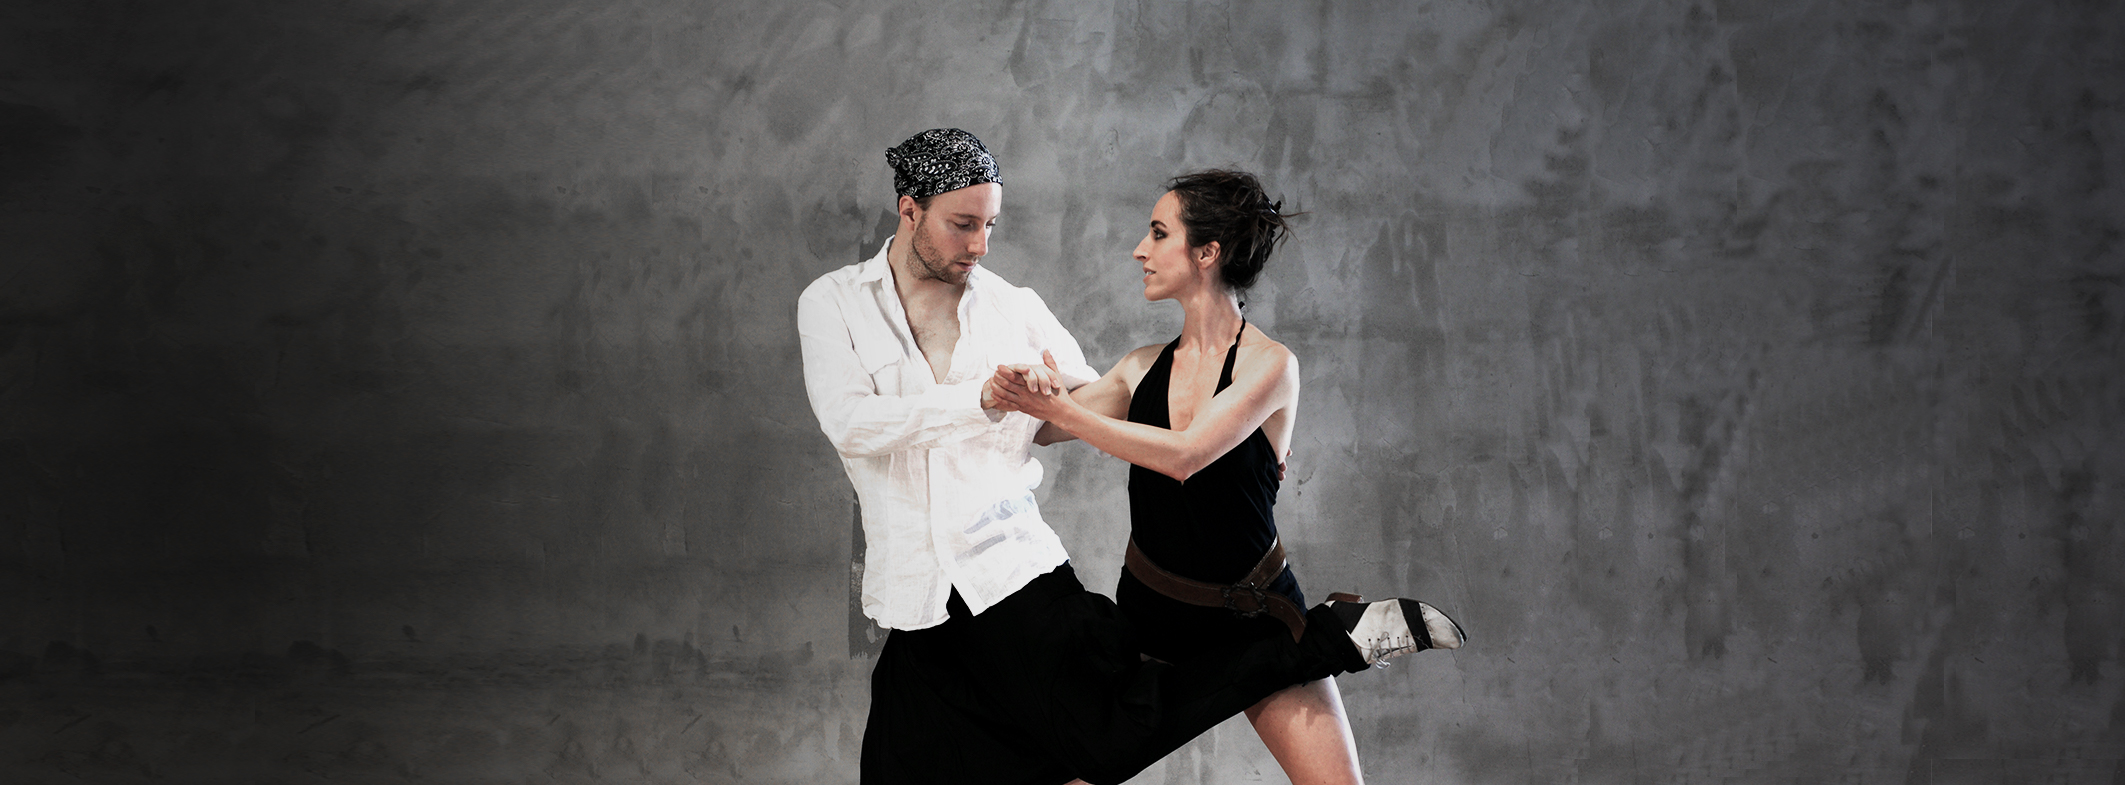 Tangobewegung Frankfurt | mit Chantal & Sebastian